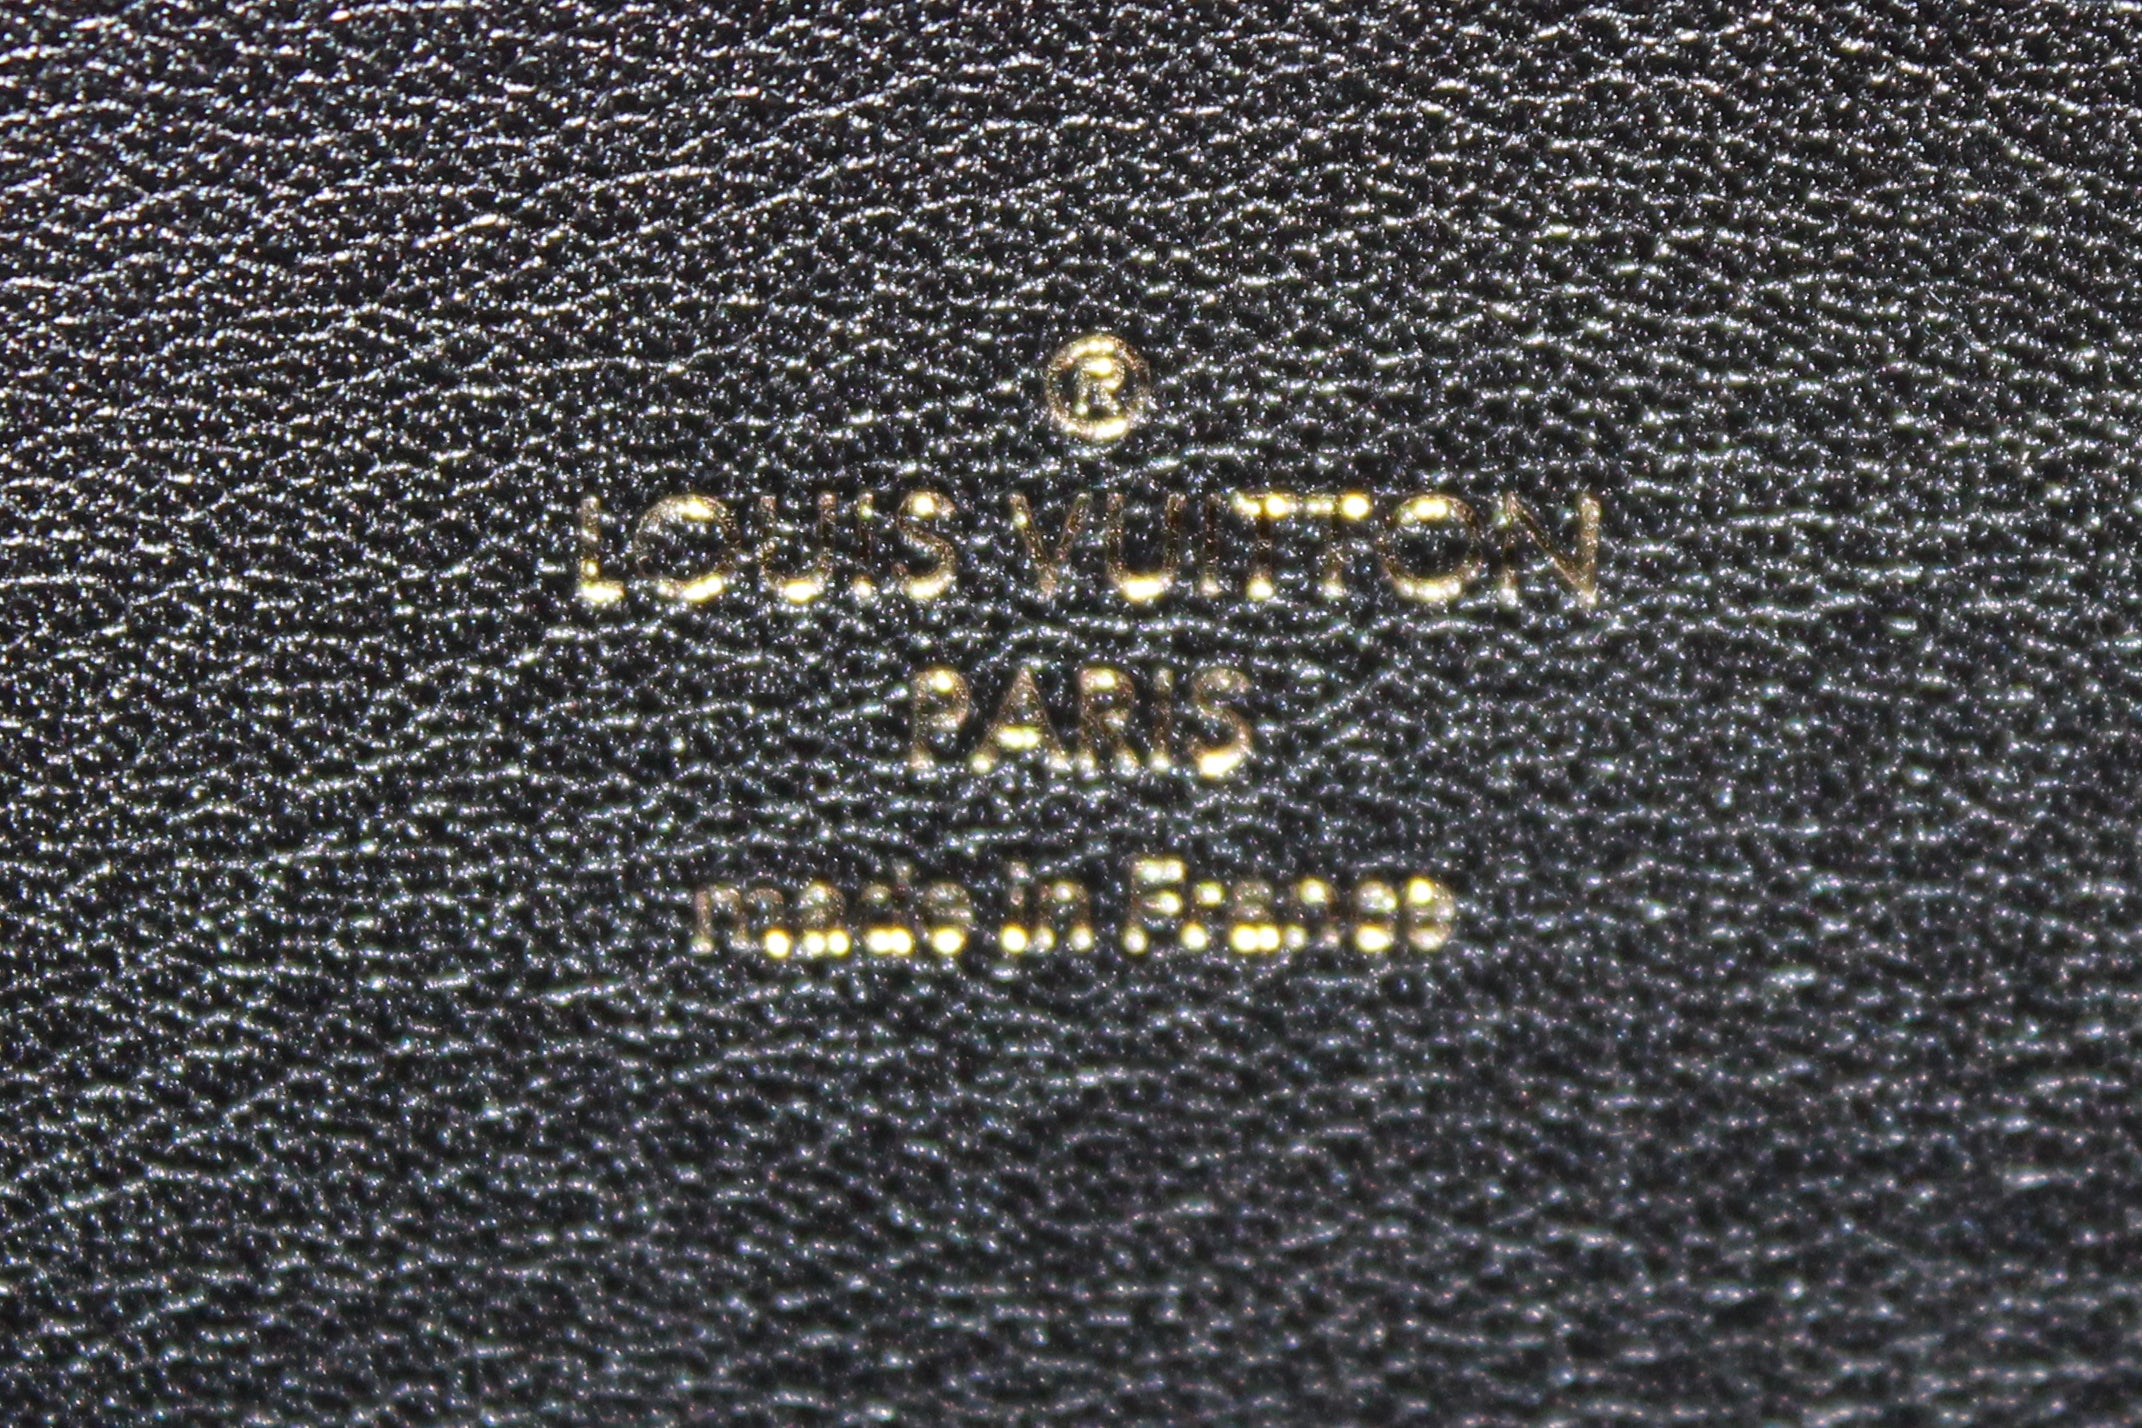 Noé leather handbag Louis Vuitton Black in Leather - 34357727